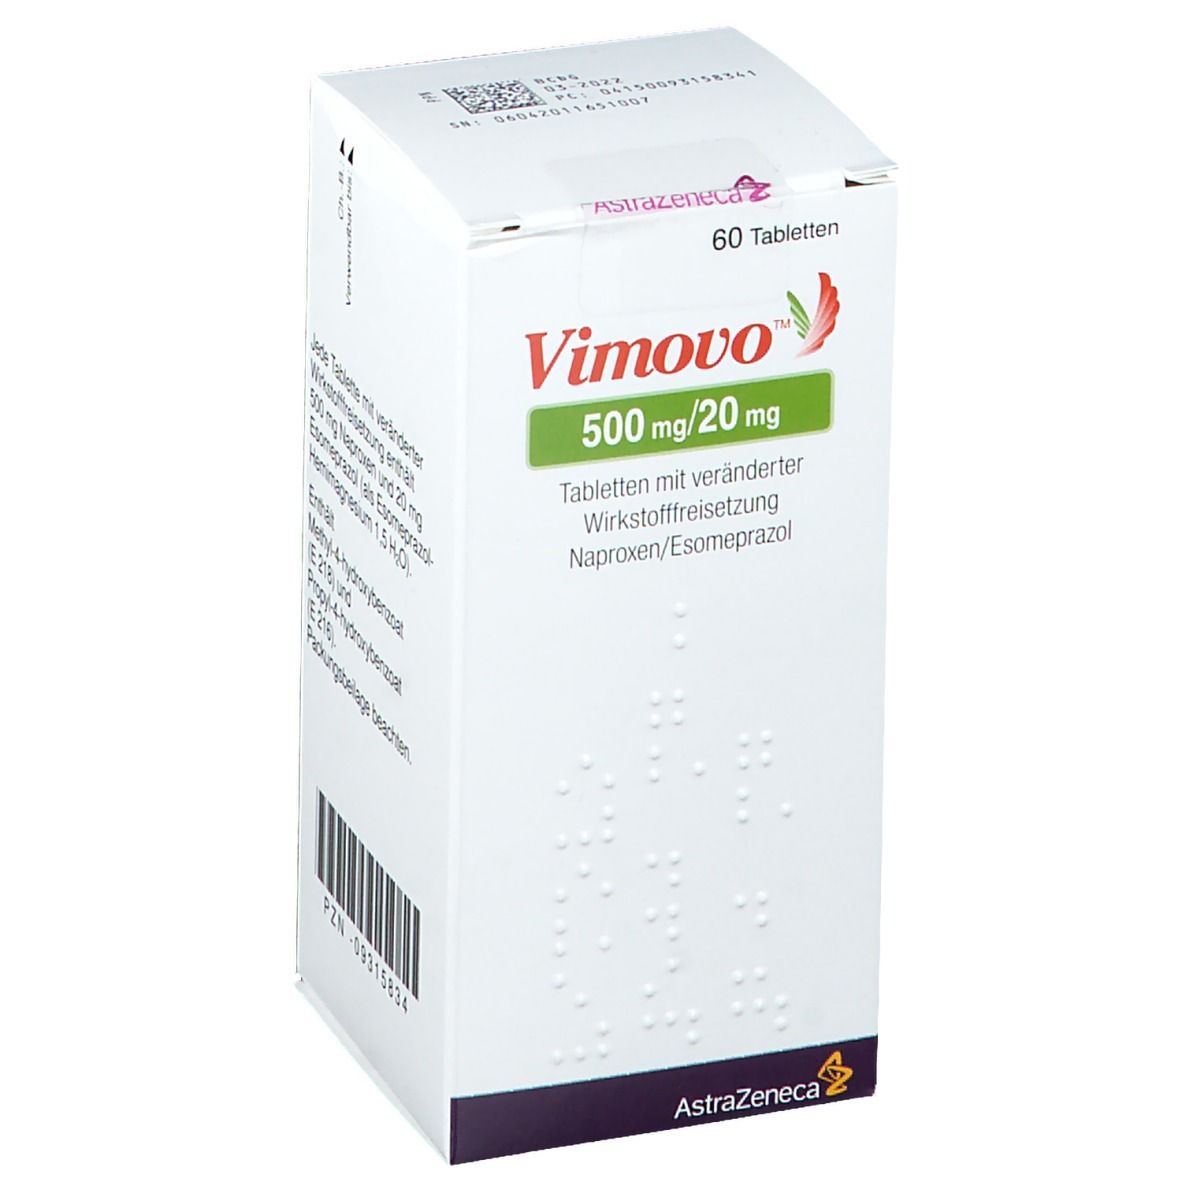 Vimovo™ 500 mg/20 mg